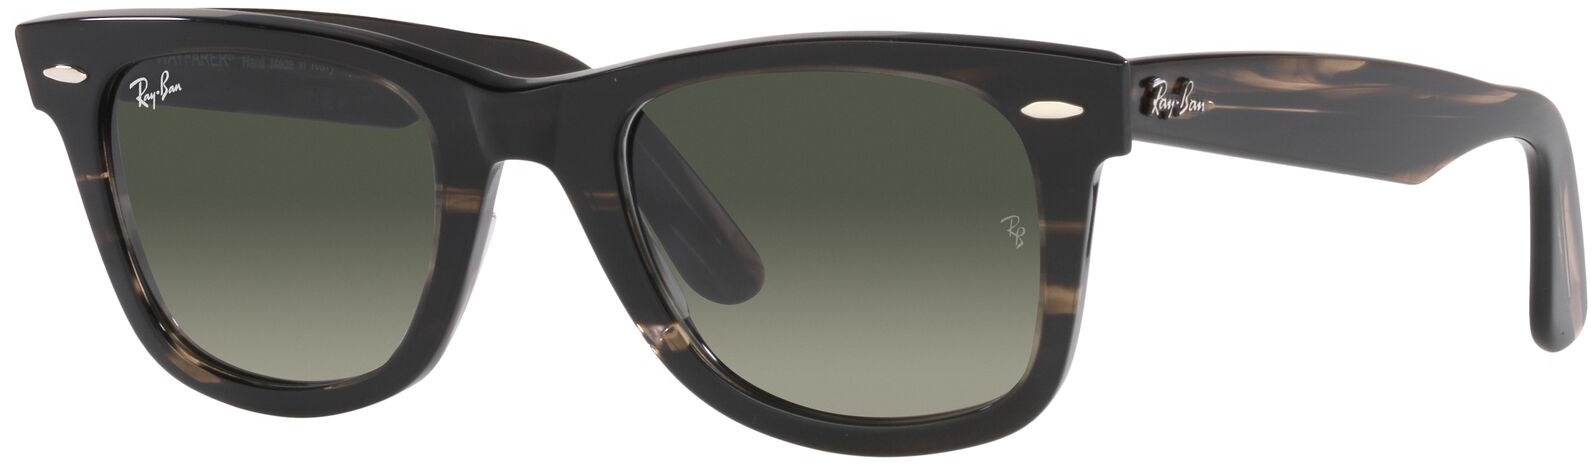 Оригинальные солнцезащитные очки Wayfarer из биоацетата Ray-Ban, серый